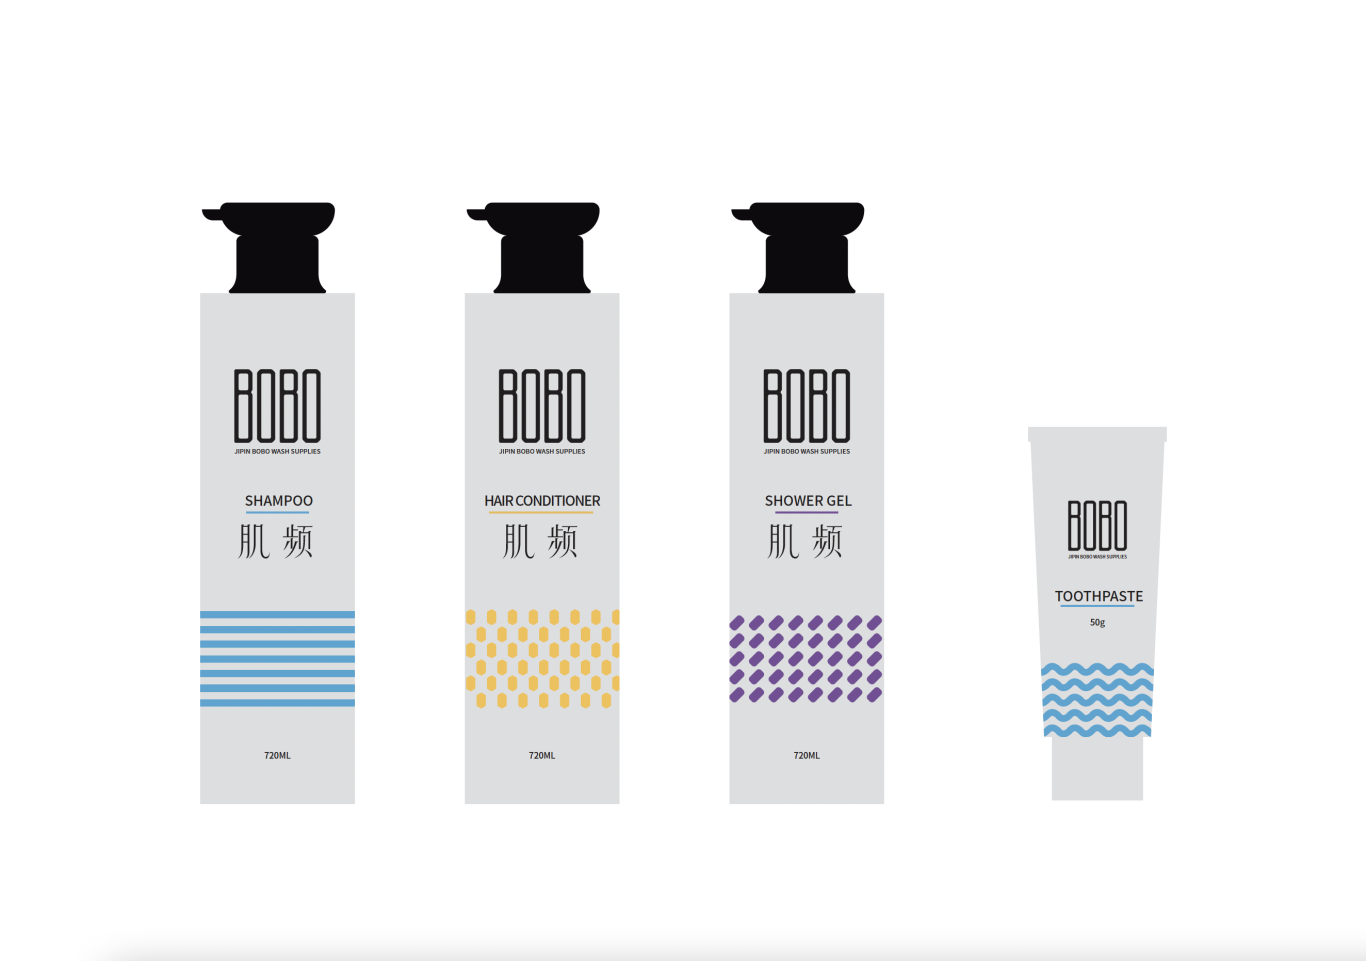 肌頻 BOBO 洗護產品標志設計圖5